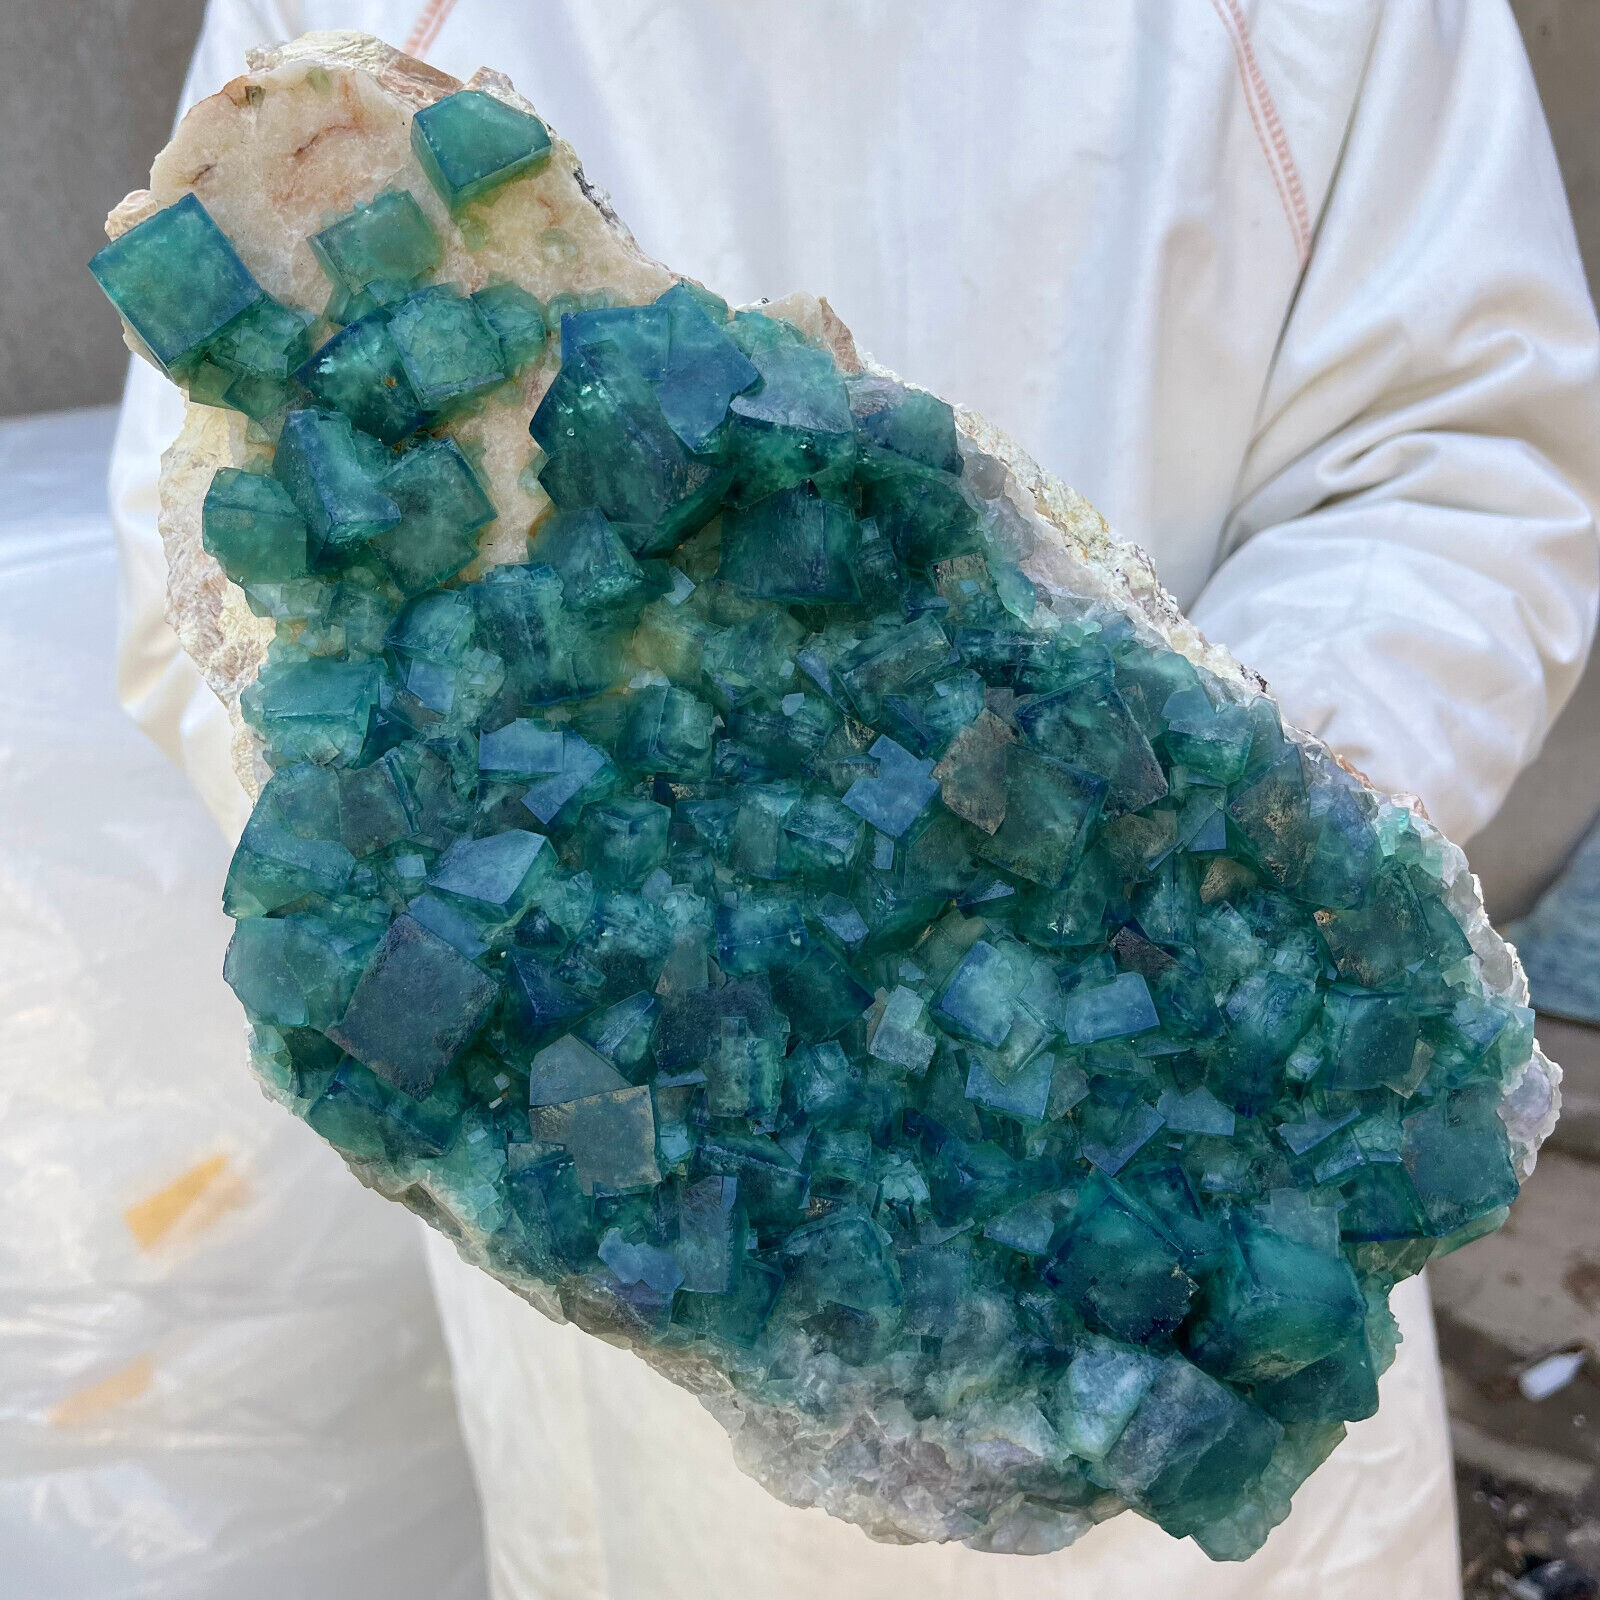 18.5lb Large NATURAL Green Cube FLUORITE Quartz Crystal Cluster Mineral Specimen